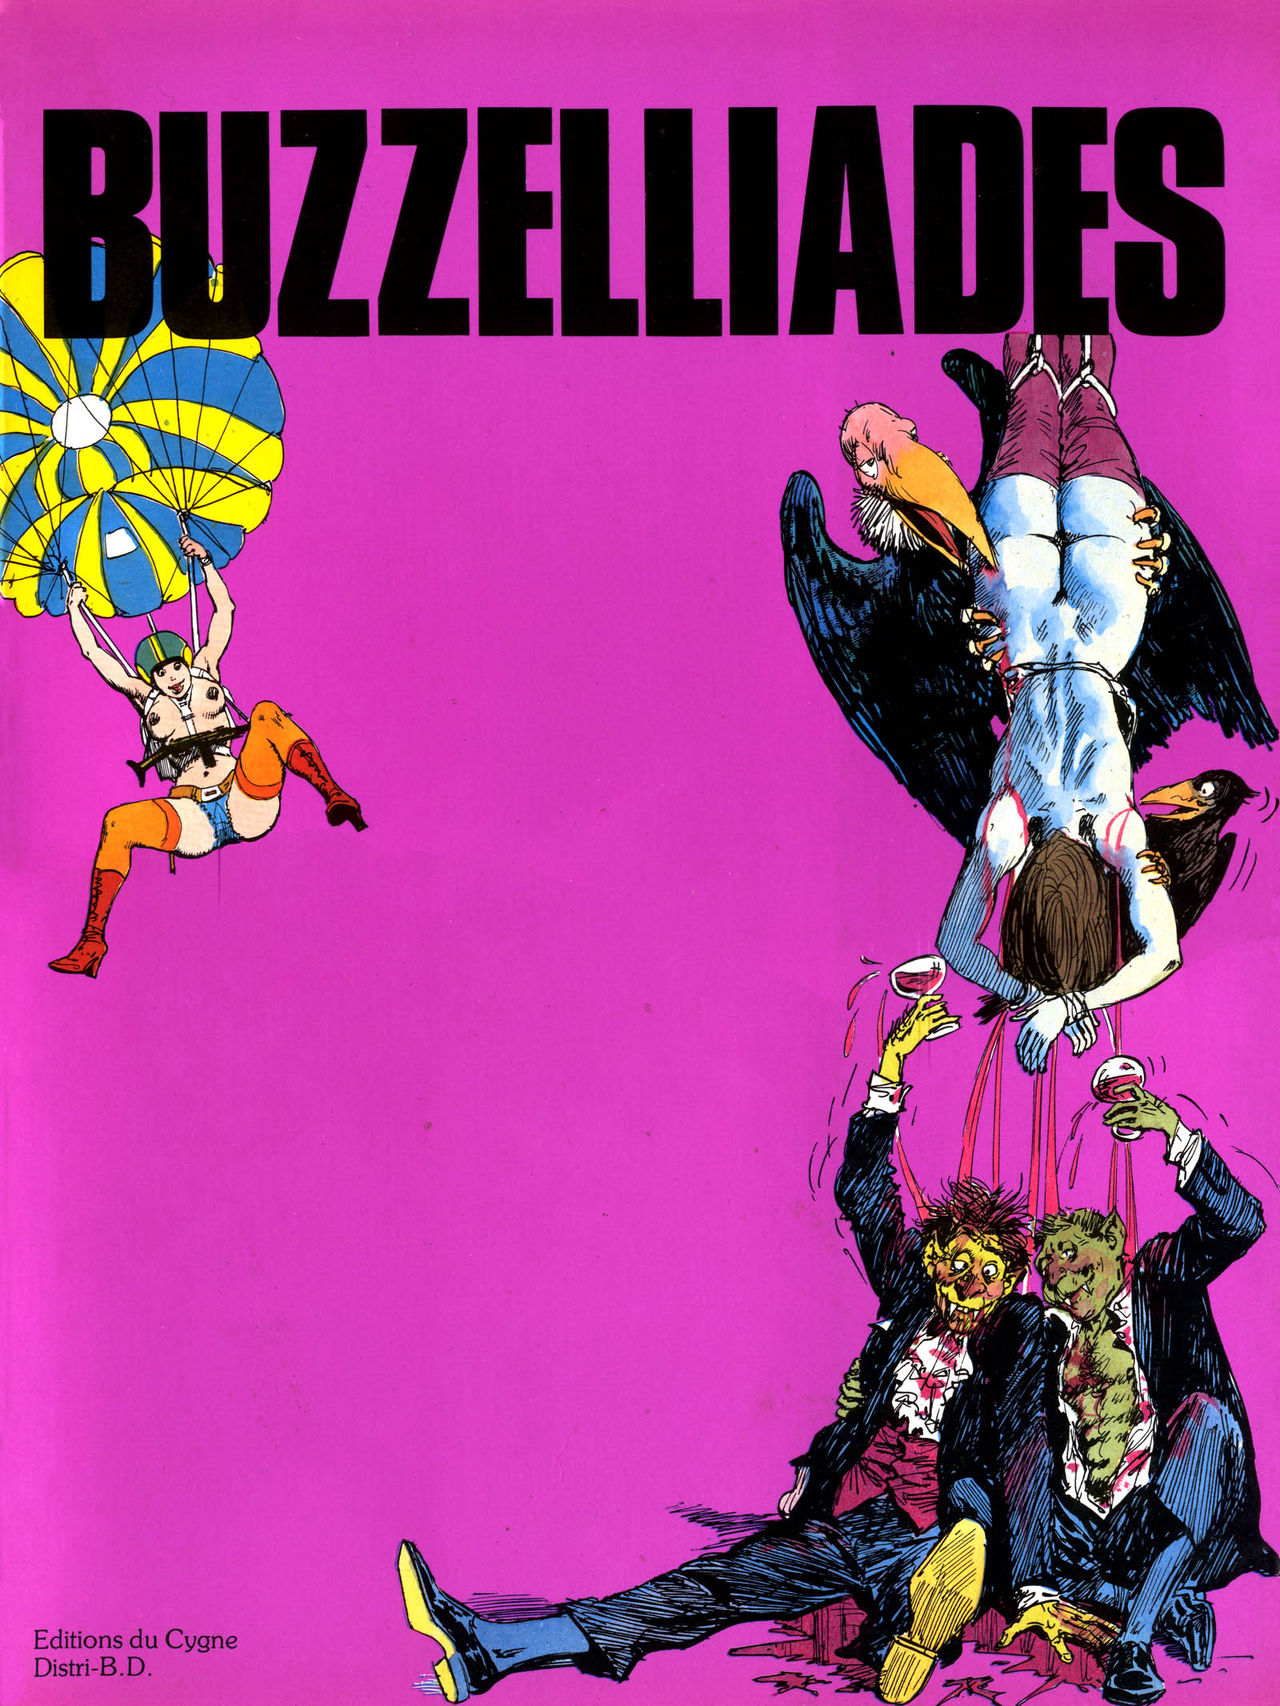 Buzzelliades